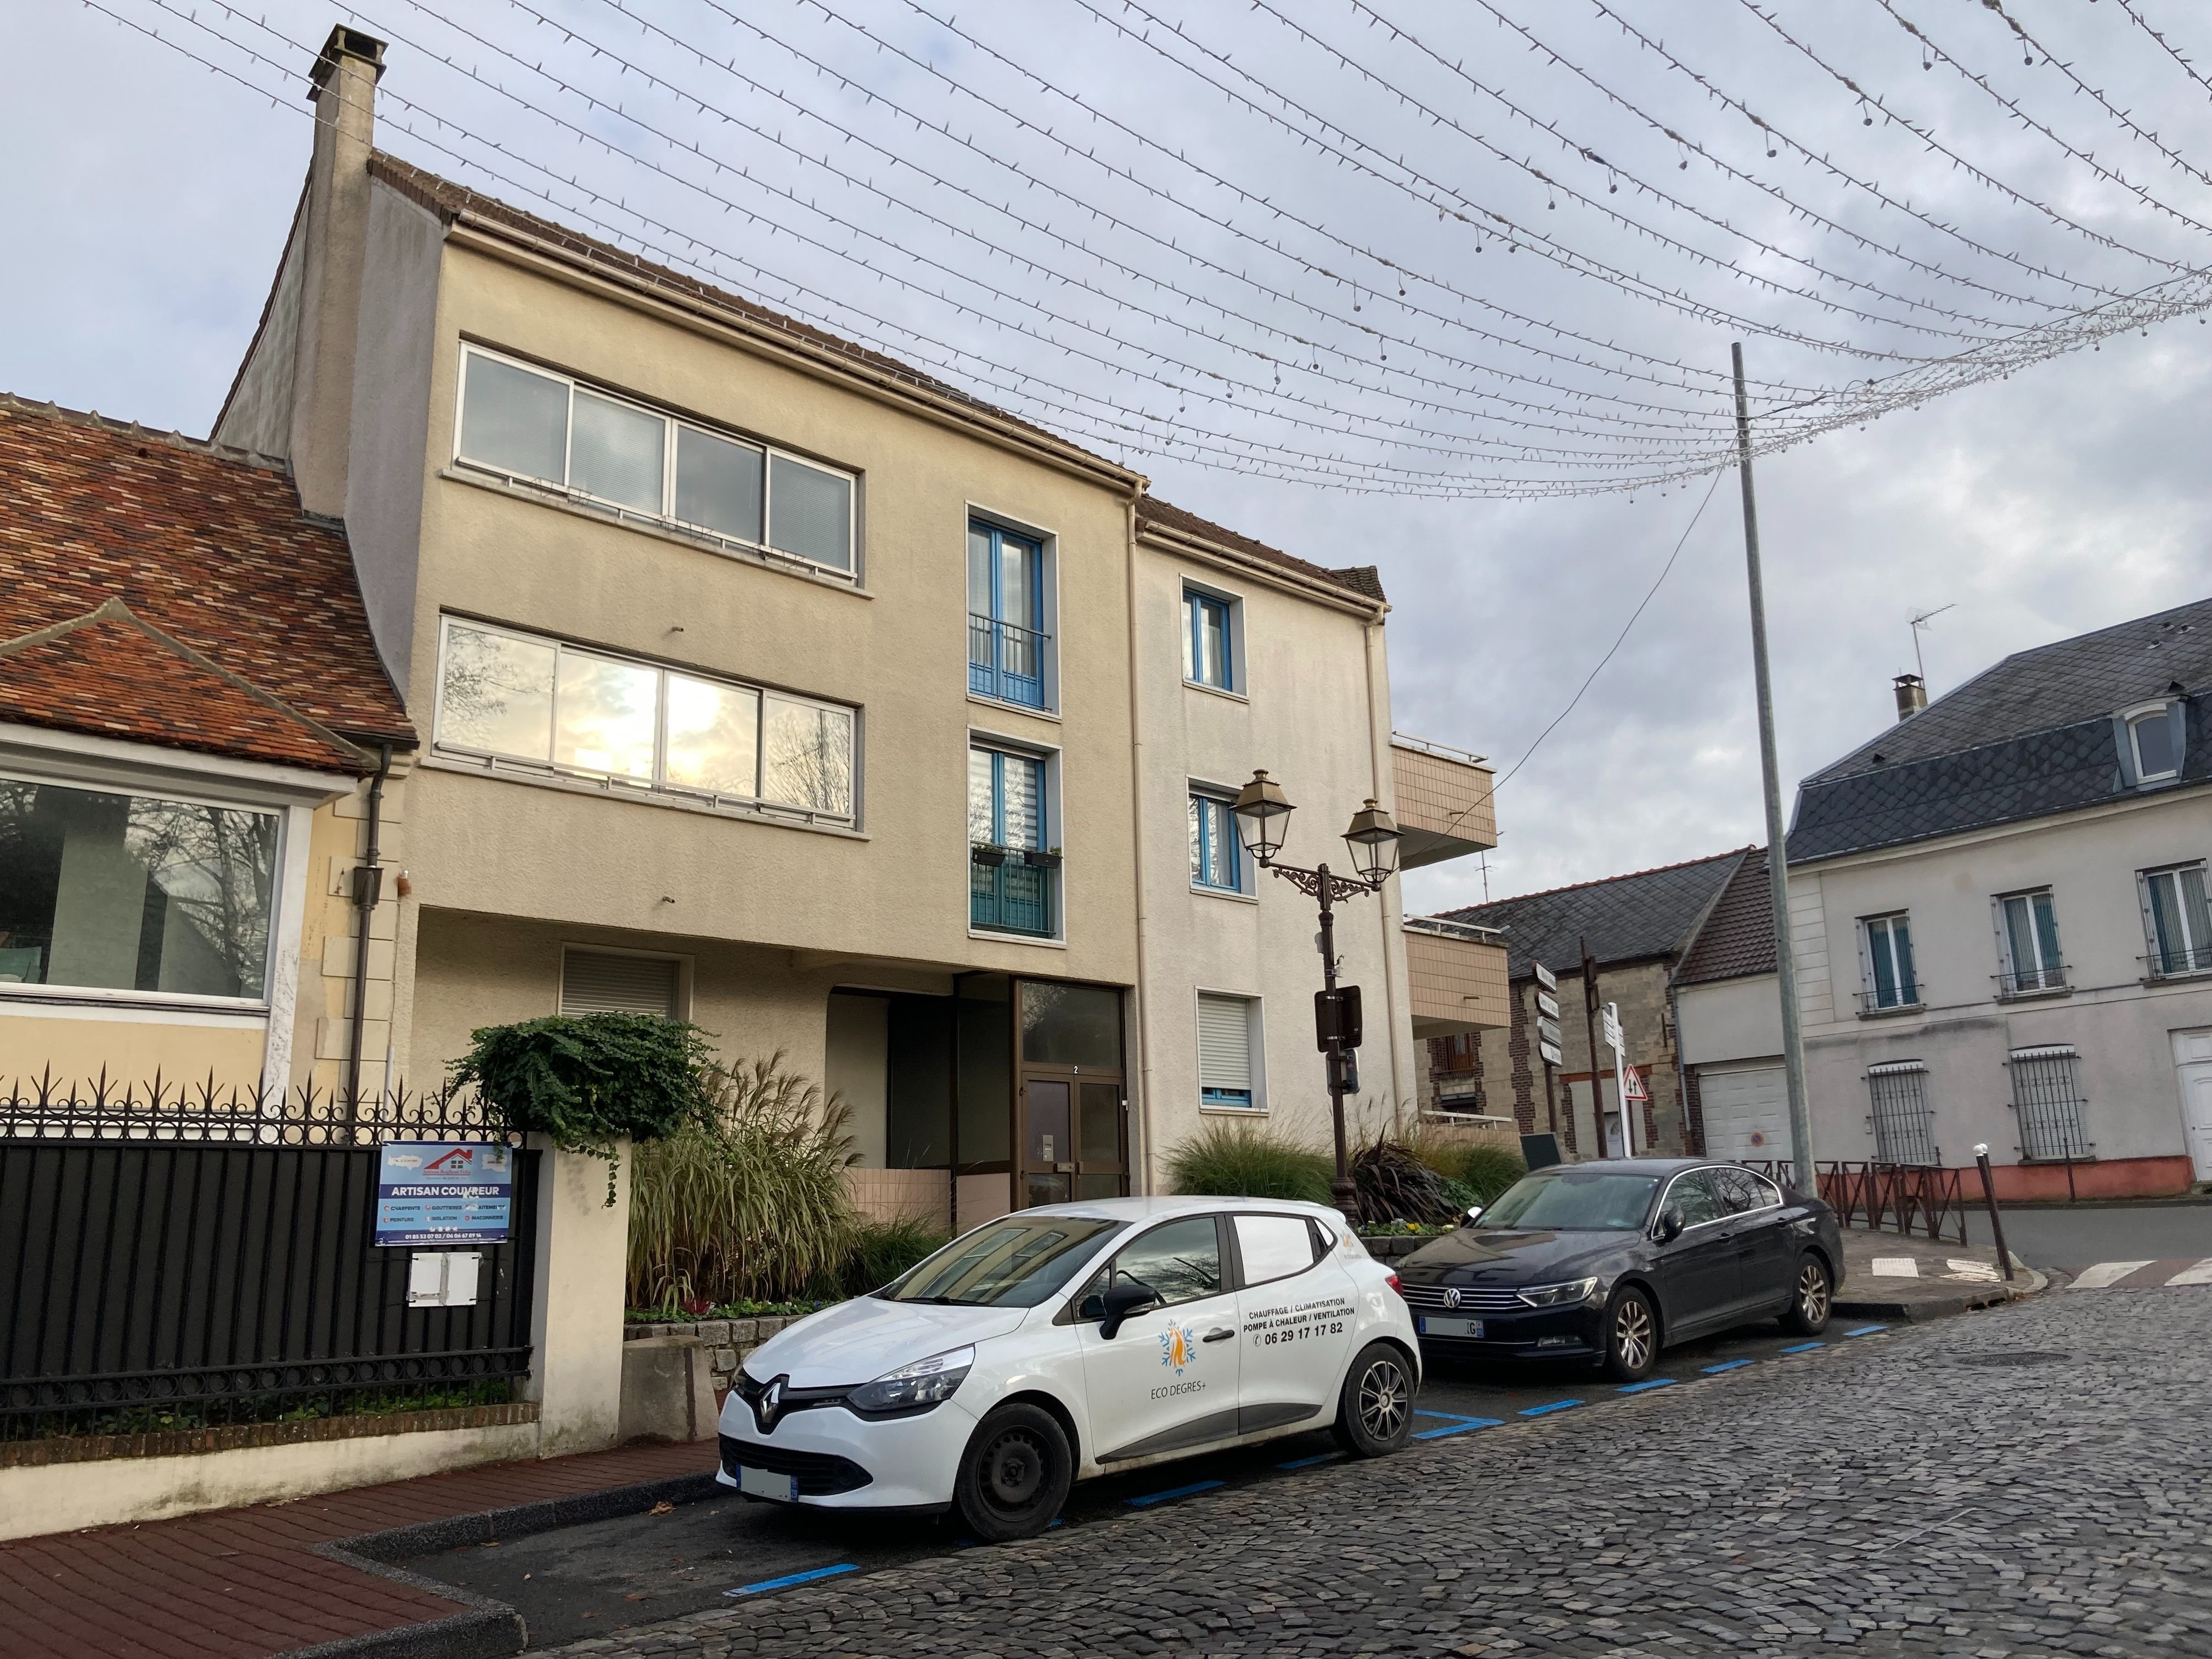 Roissy-en-France (Val-d'Oise), le 29 novembre. Le nombre de meublés touristiques a plus que doublé dans le village, faisant même baisser légèrement la population municipale. LP/A.C.